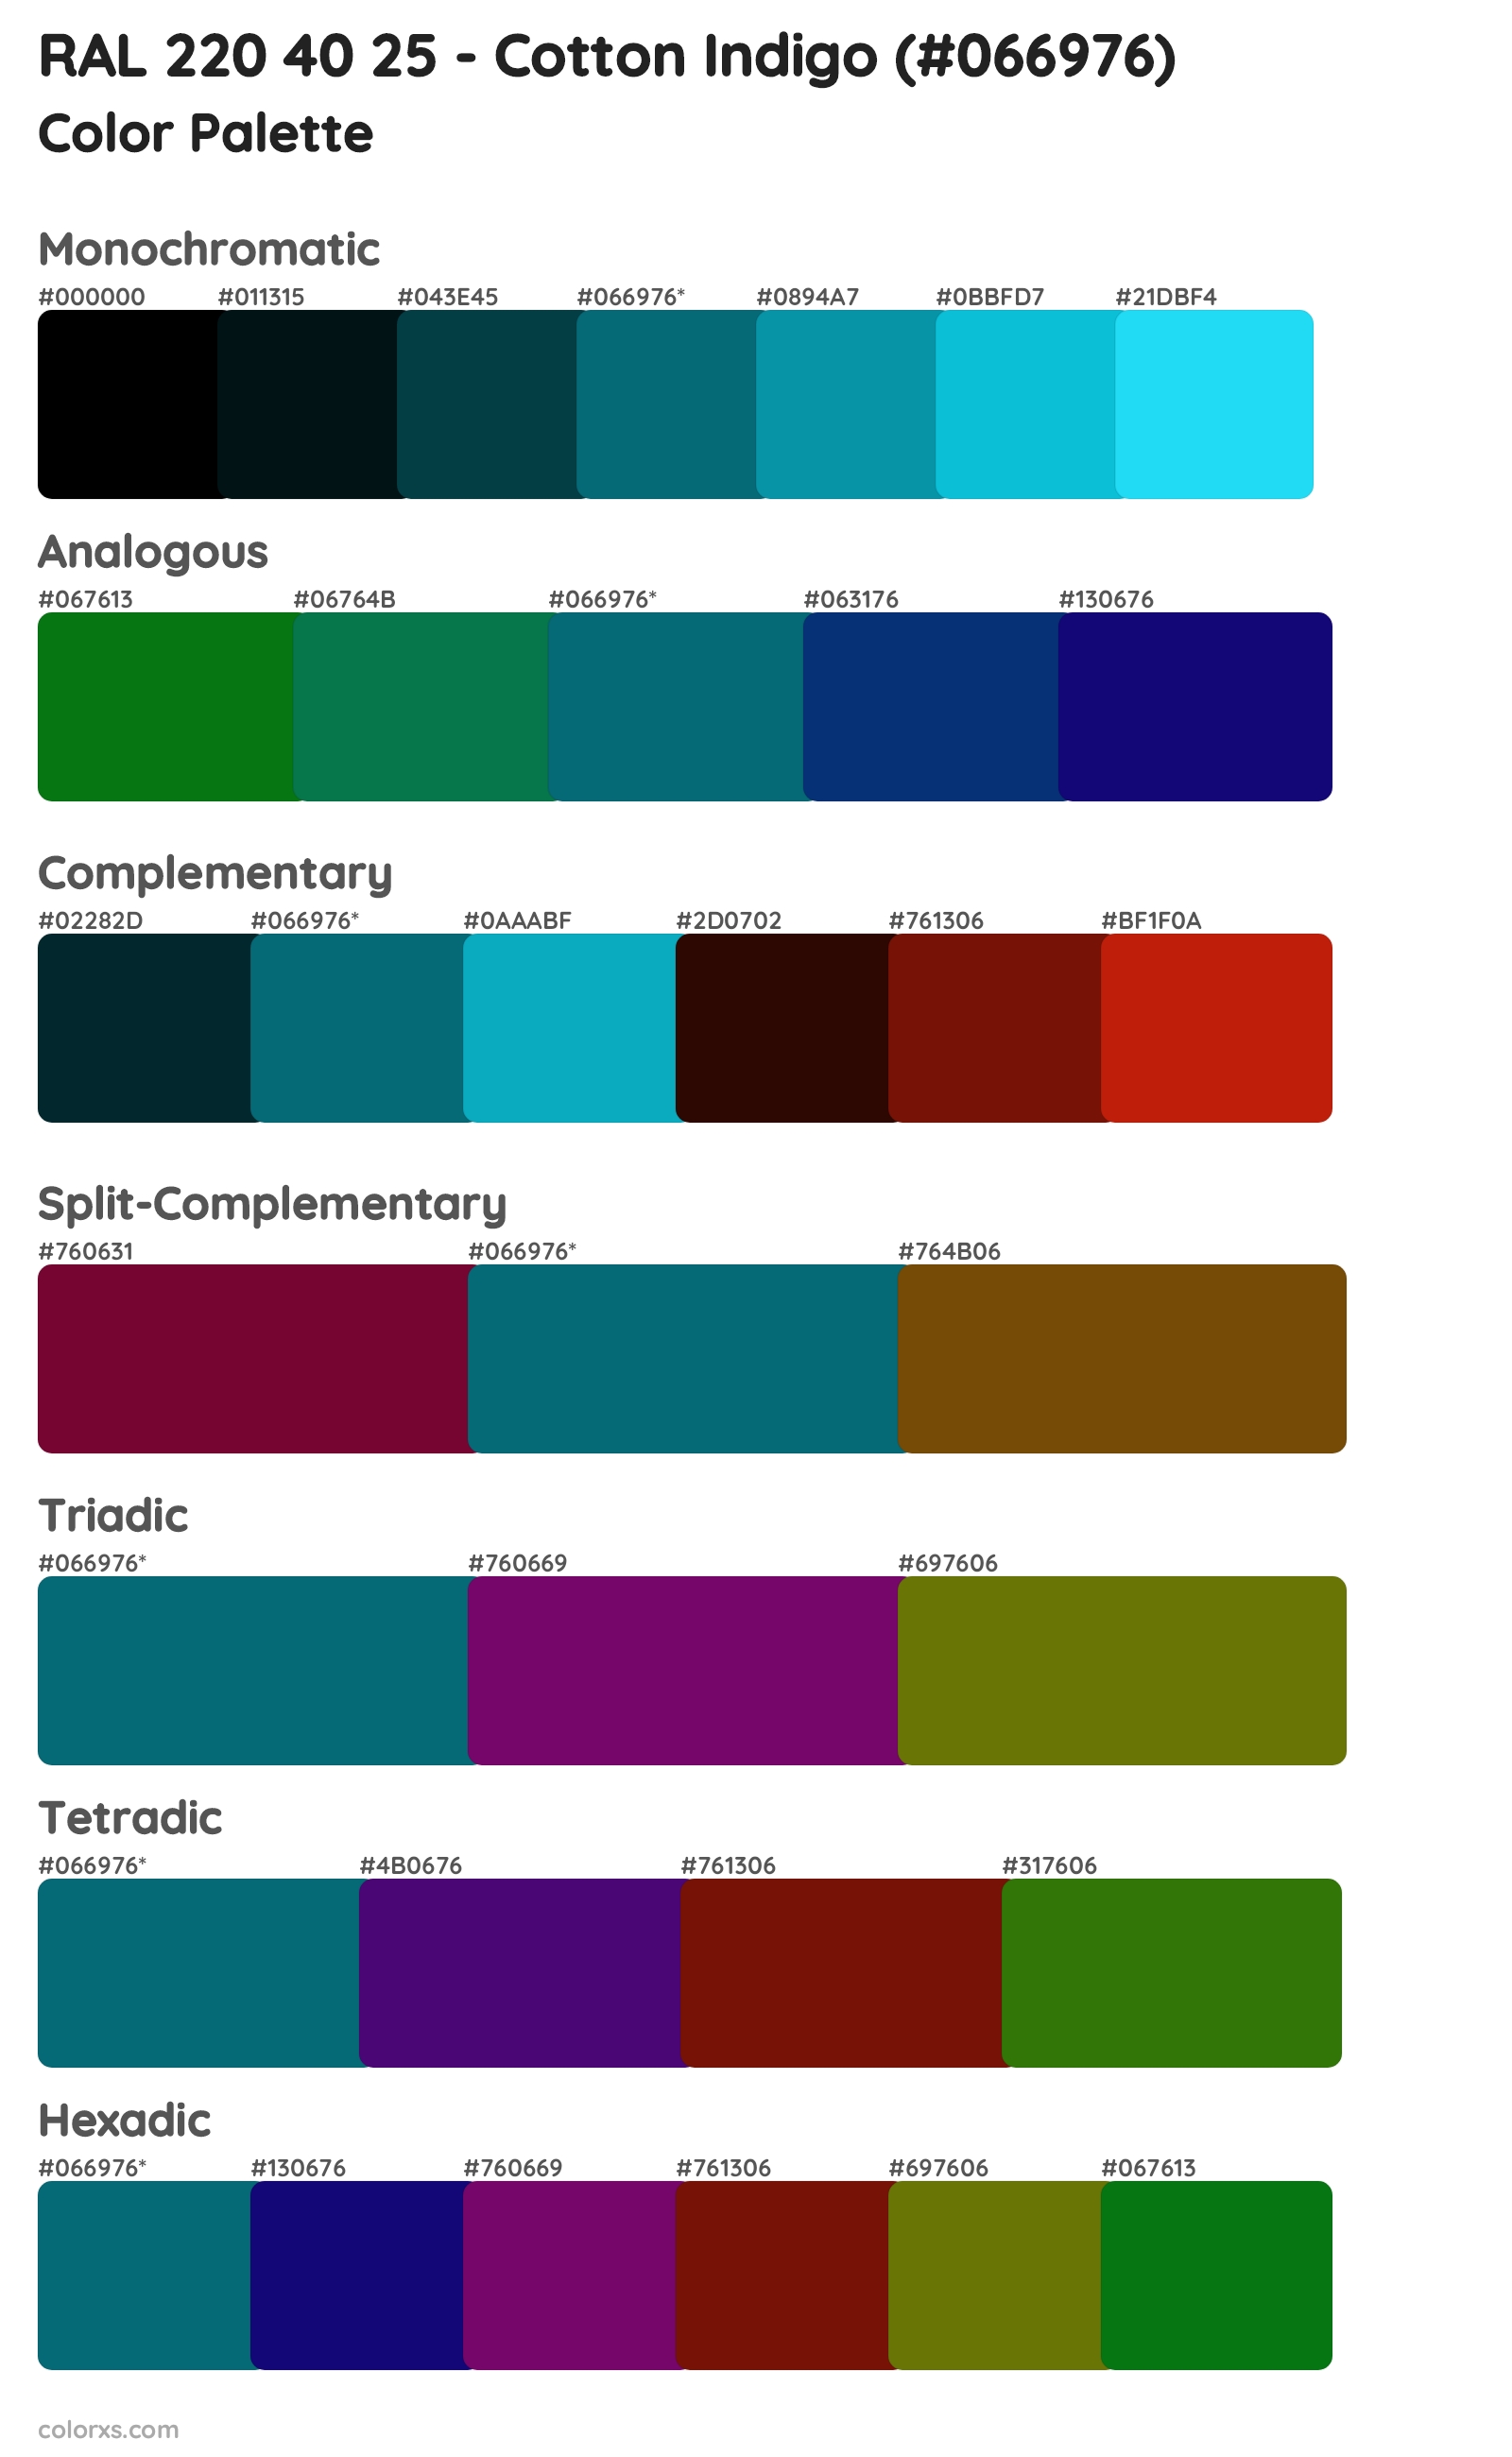 RAL 220 40 25 - Cotton Indigo Color Scheme Palettes